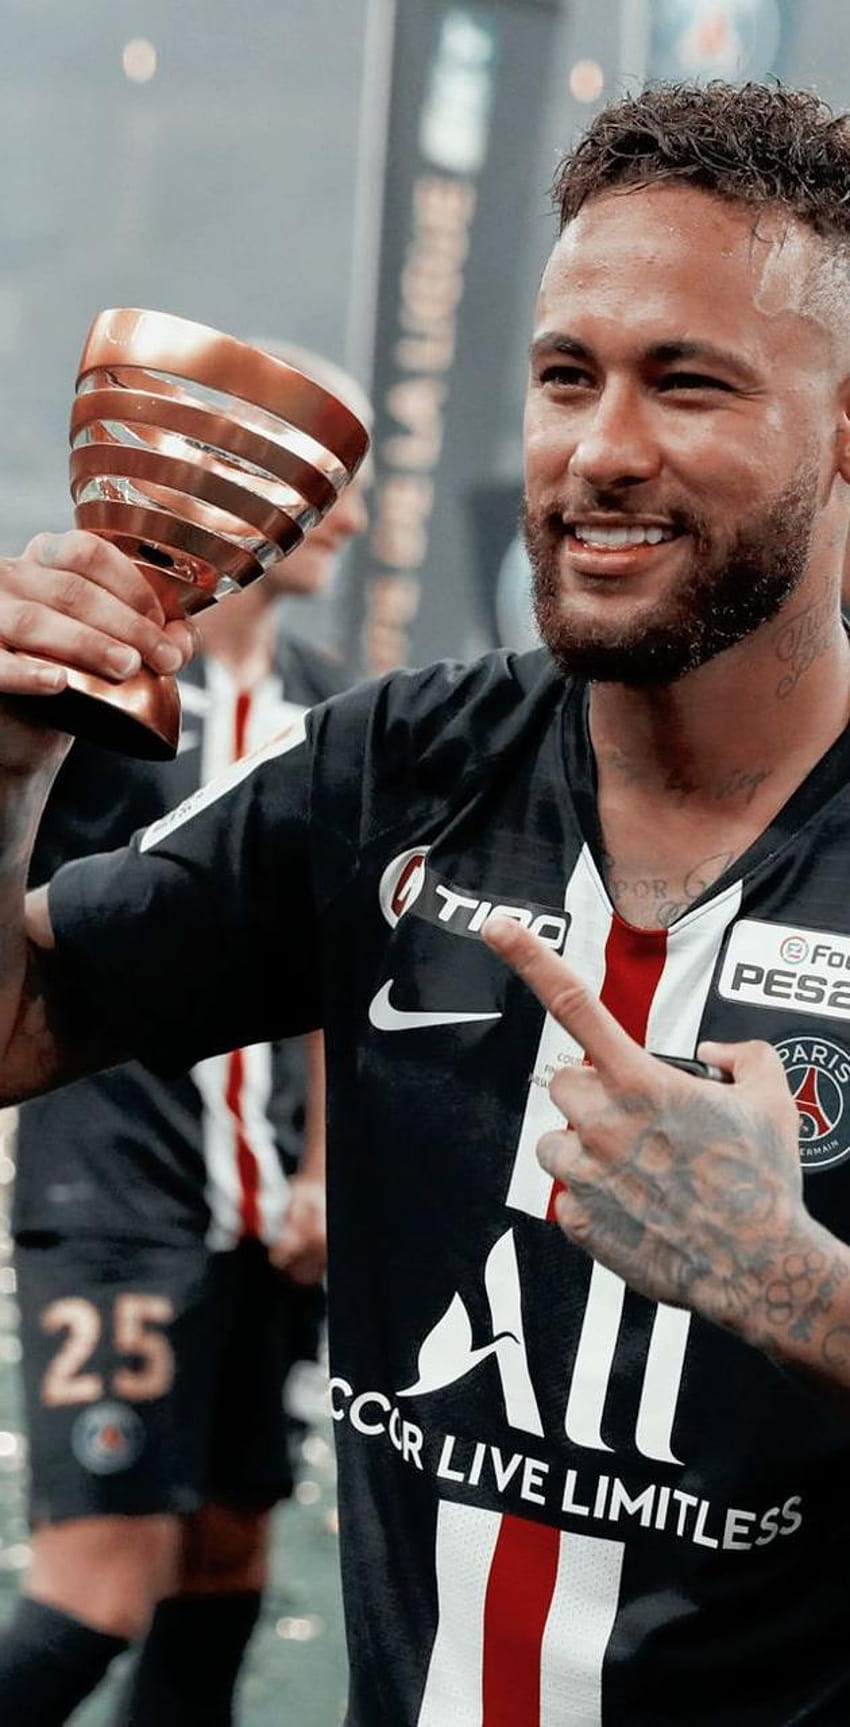 Cần một lời nhắc nhở về sự đáng yêu của Neymar Jr trên màn hình điện thoại của bạn? Hãy cập nhật ngay hình nền điện thoại HD tràn đầy nụ cười của anh ta! Hình ảnh Neymar Jr luôn đầy màu sắc và năng động, với nụ cười dễ thương của anh ta sẽ giúp bạn có một ngày mới đầy năng lượng.